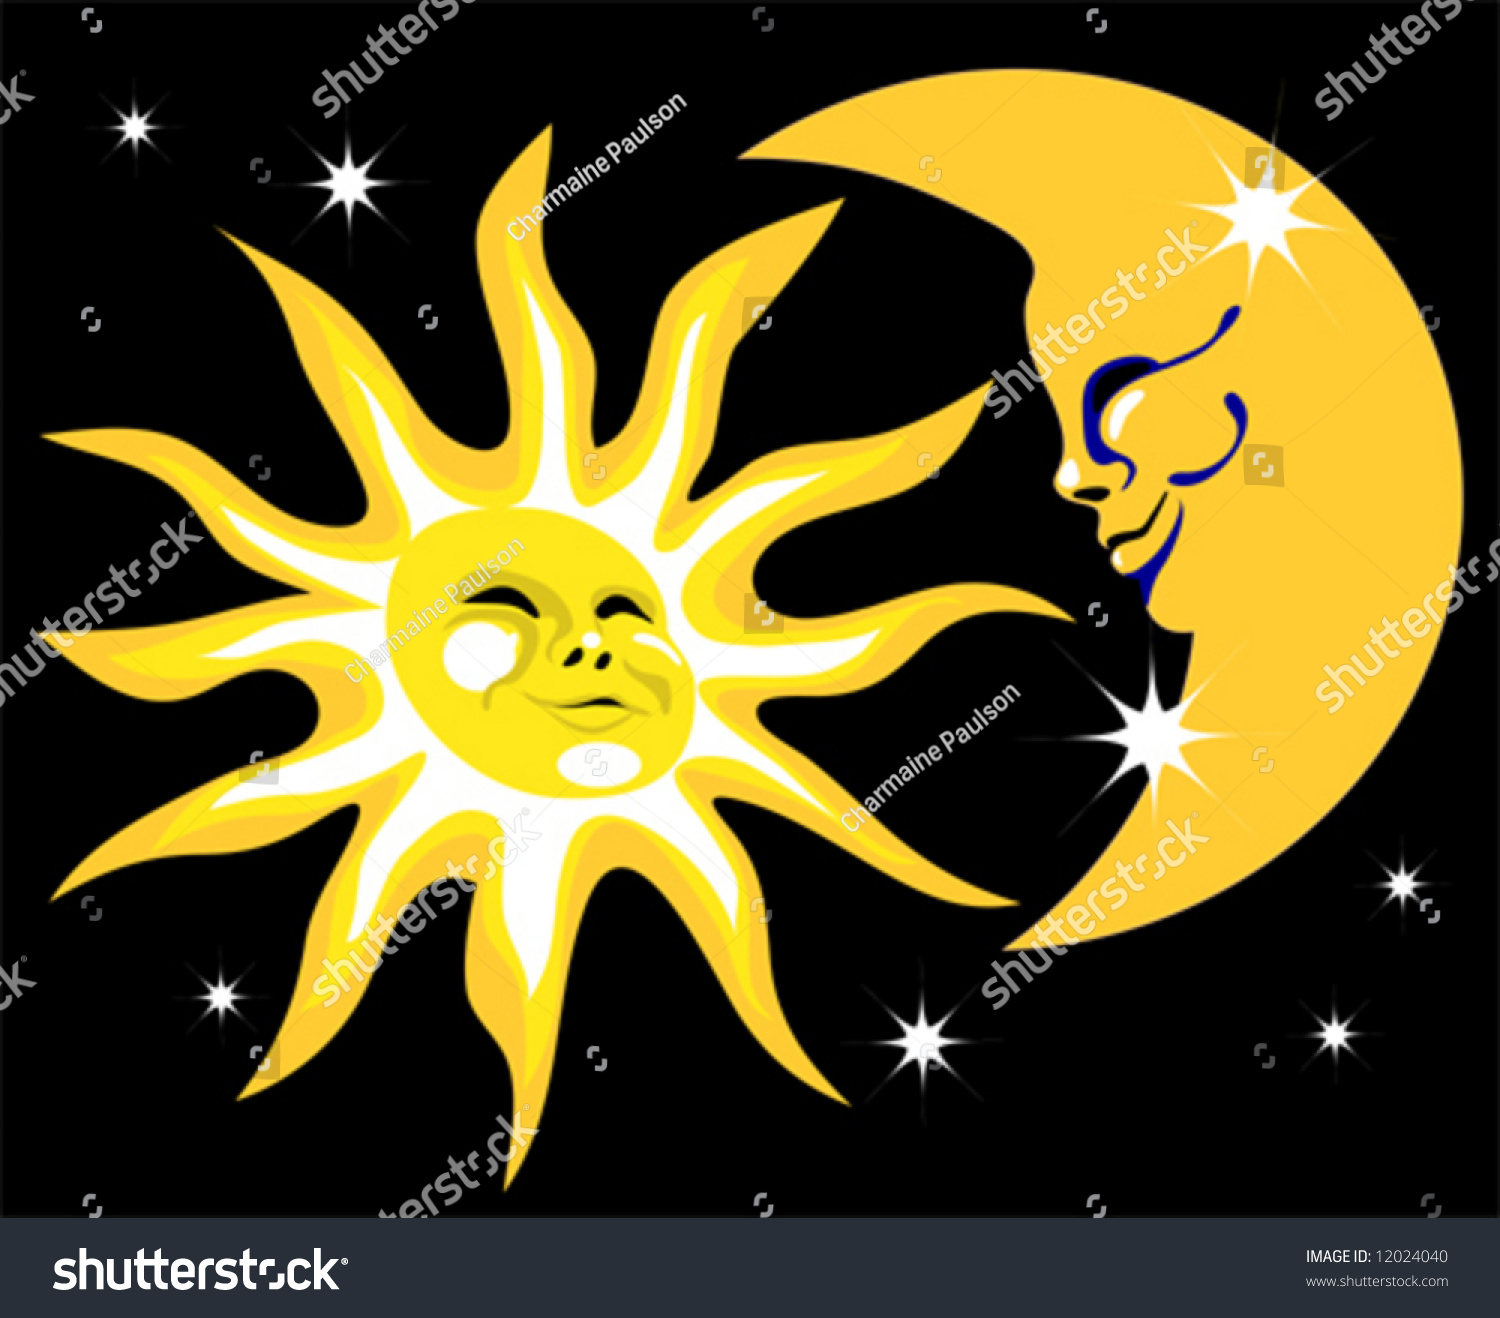 Звезда и солнце вместе